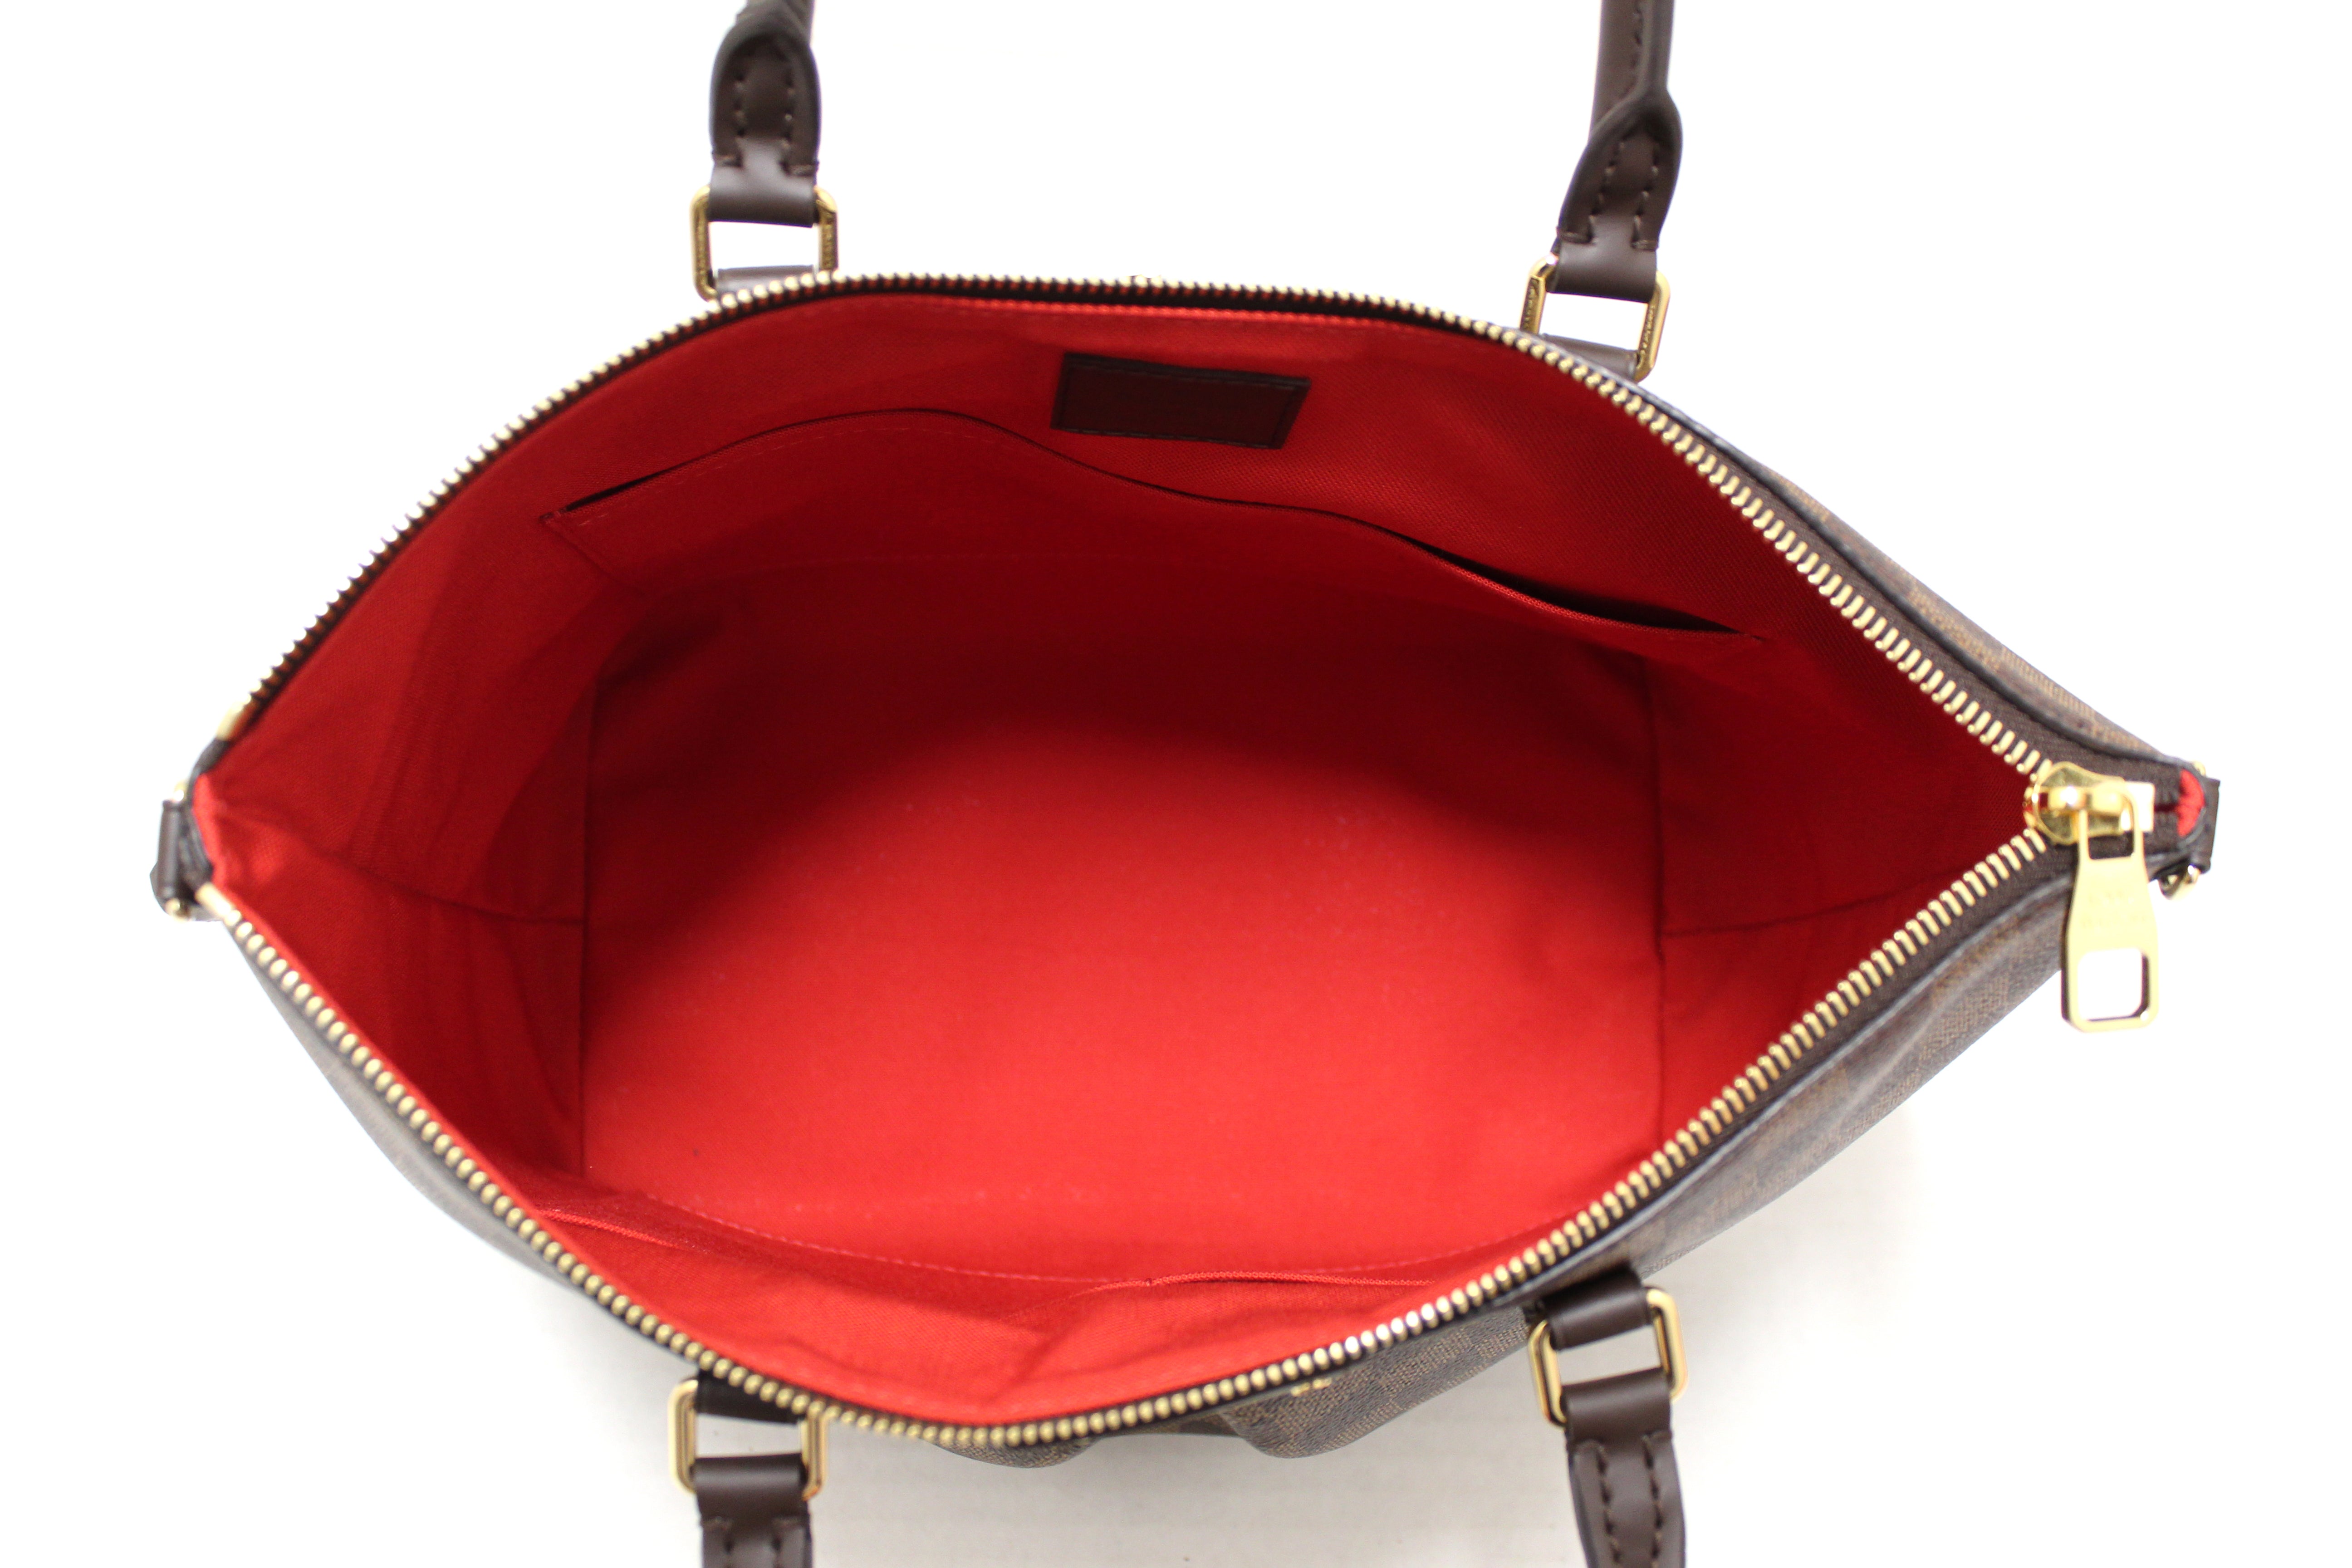 Authentic Louis Vuitton Damier Siena PM Shoulder Messenger Bag with Long Strap